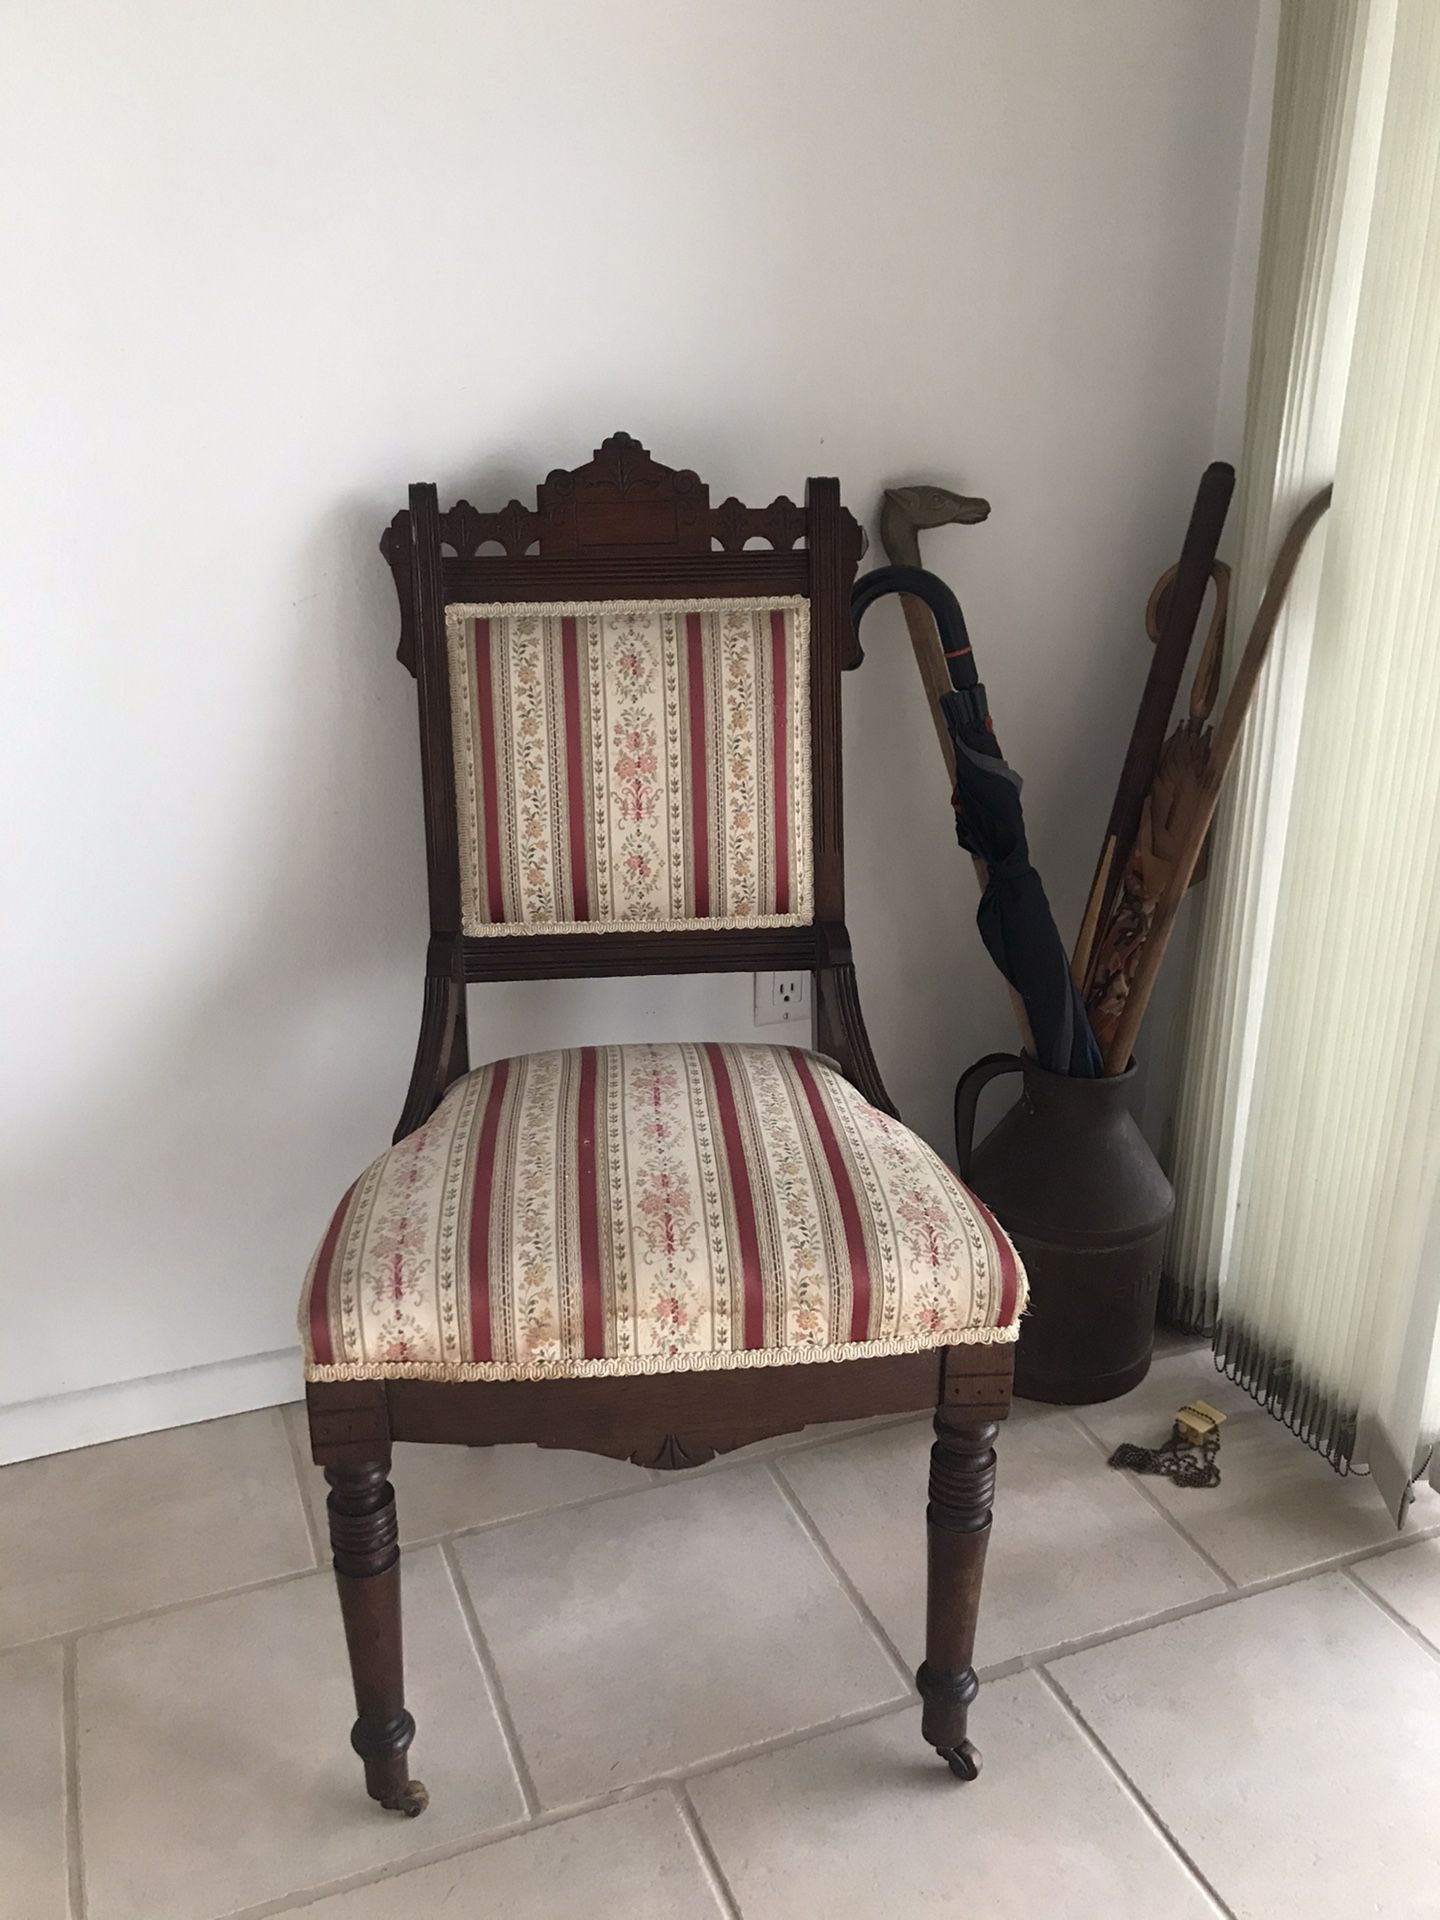 Cute antique chair